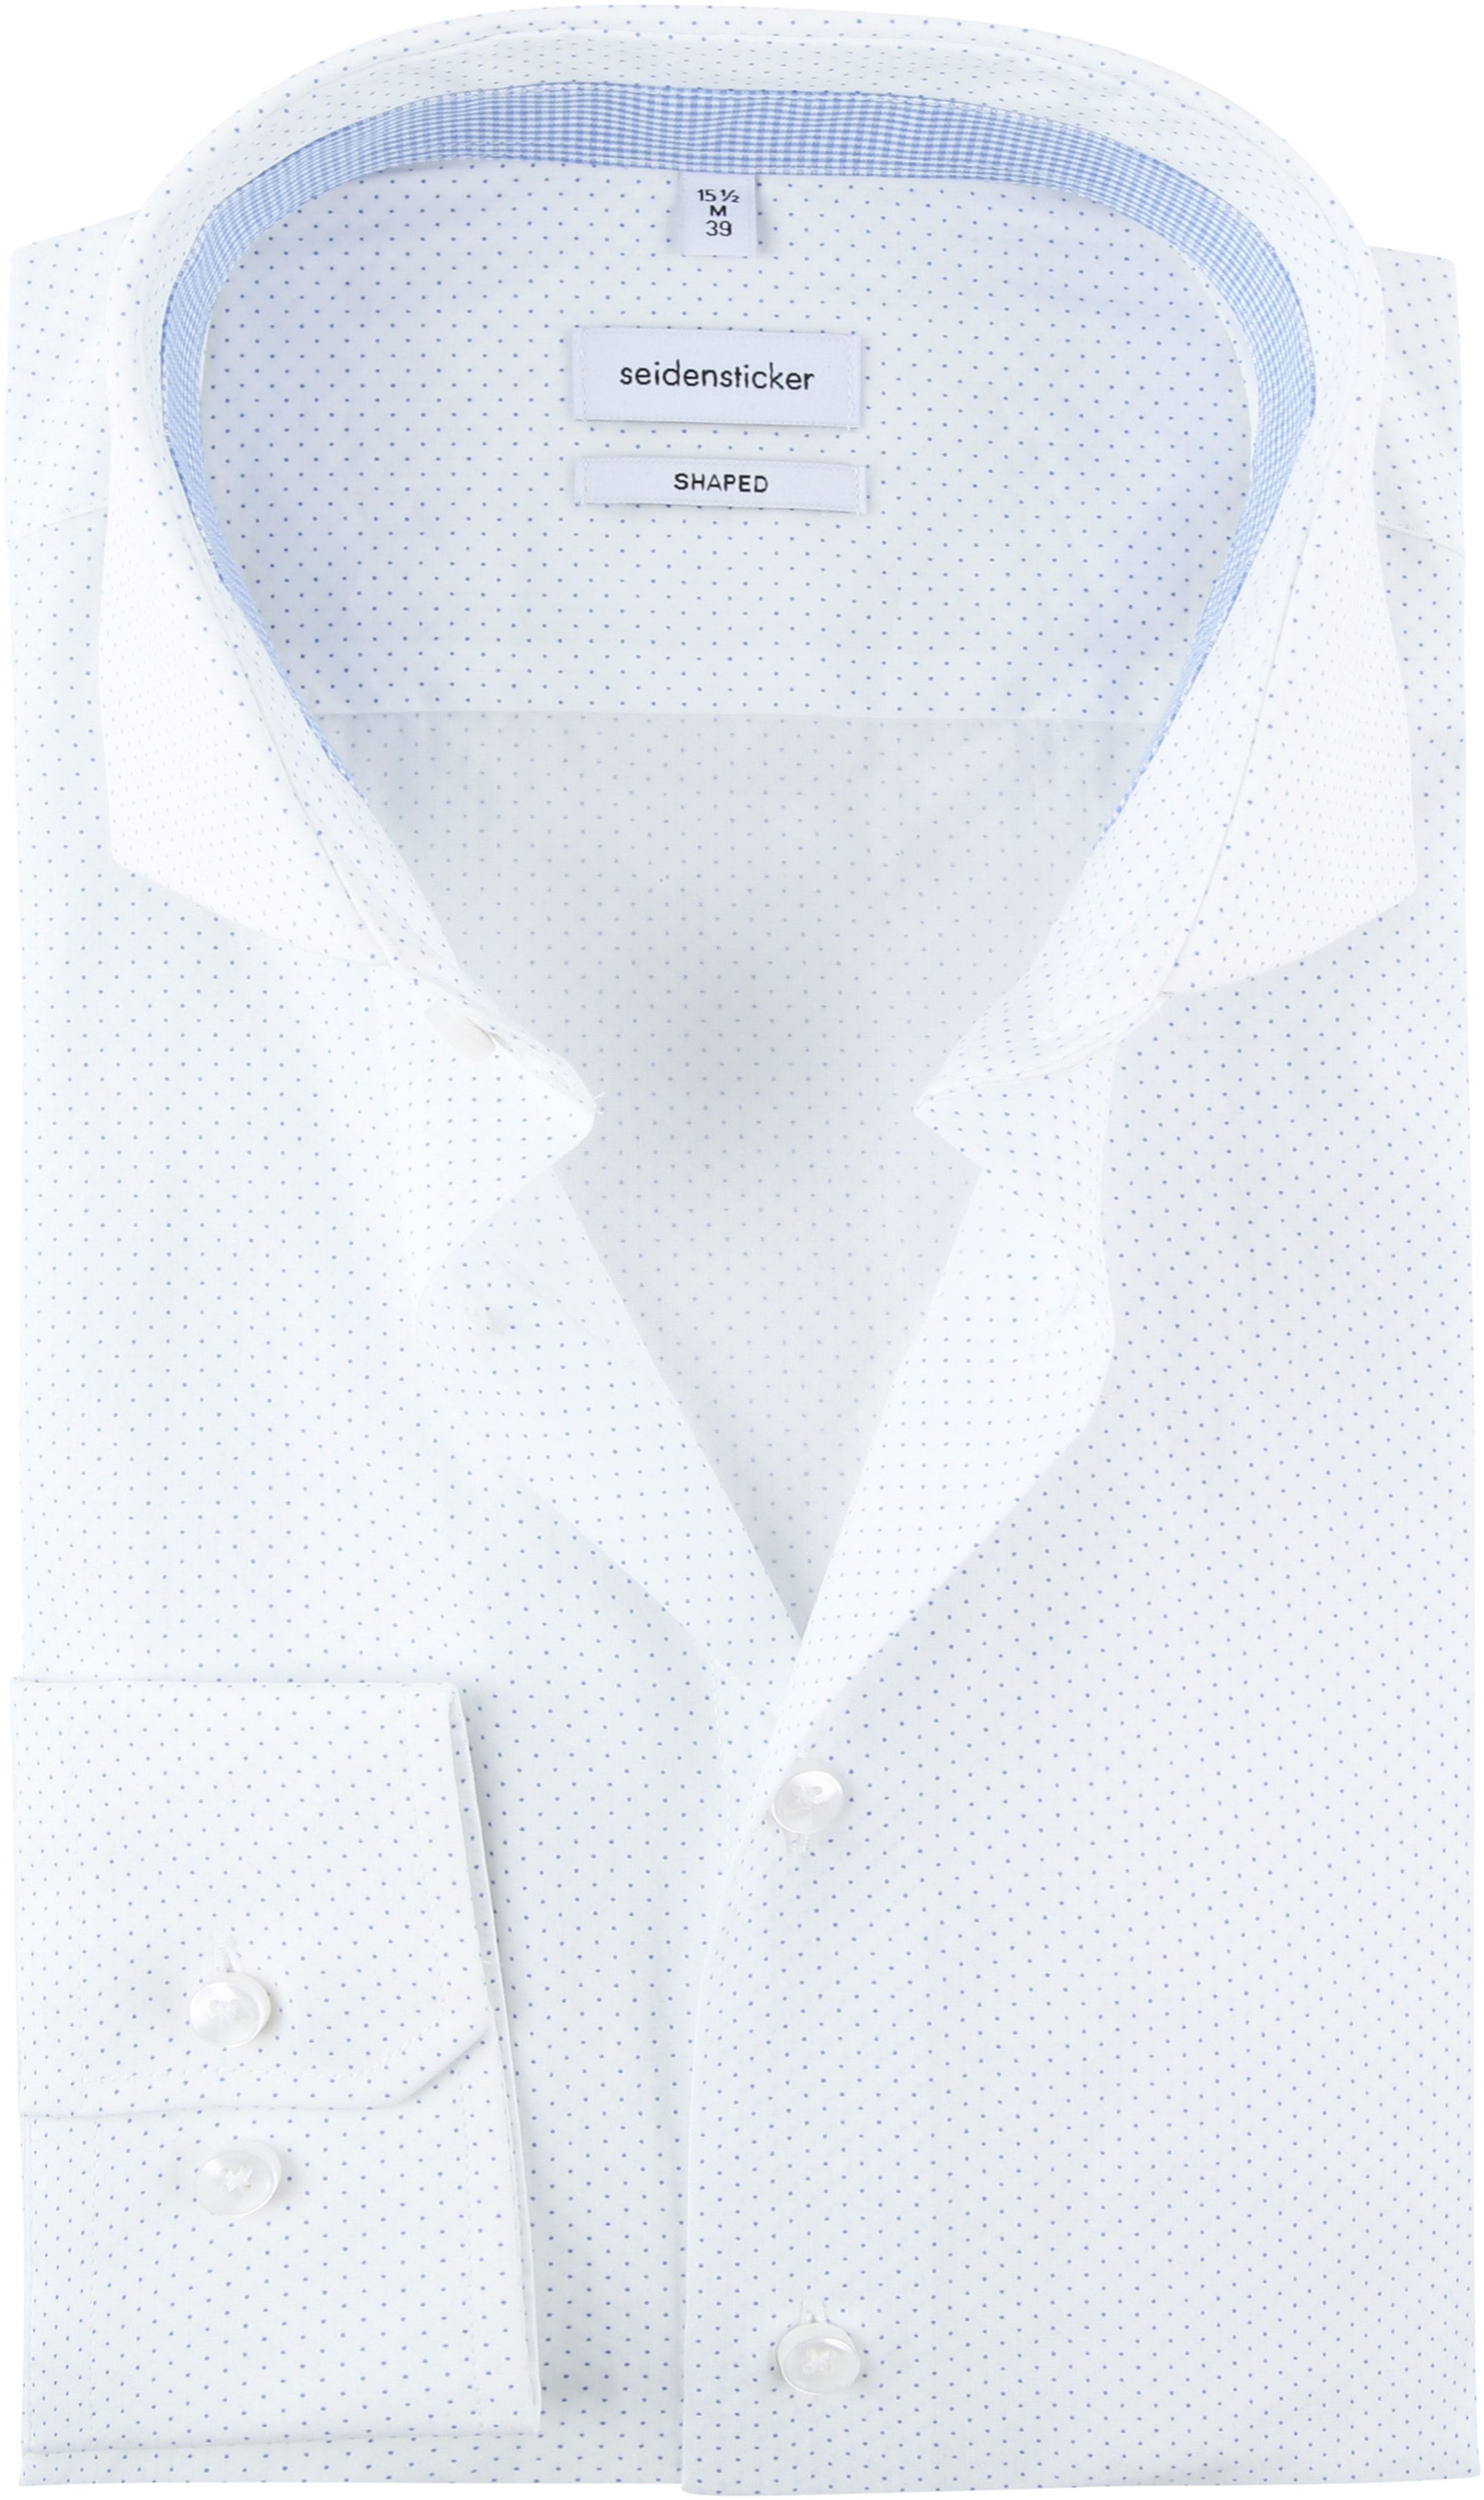 Seidensticker Shirt Dots White size 15 1/2